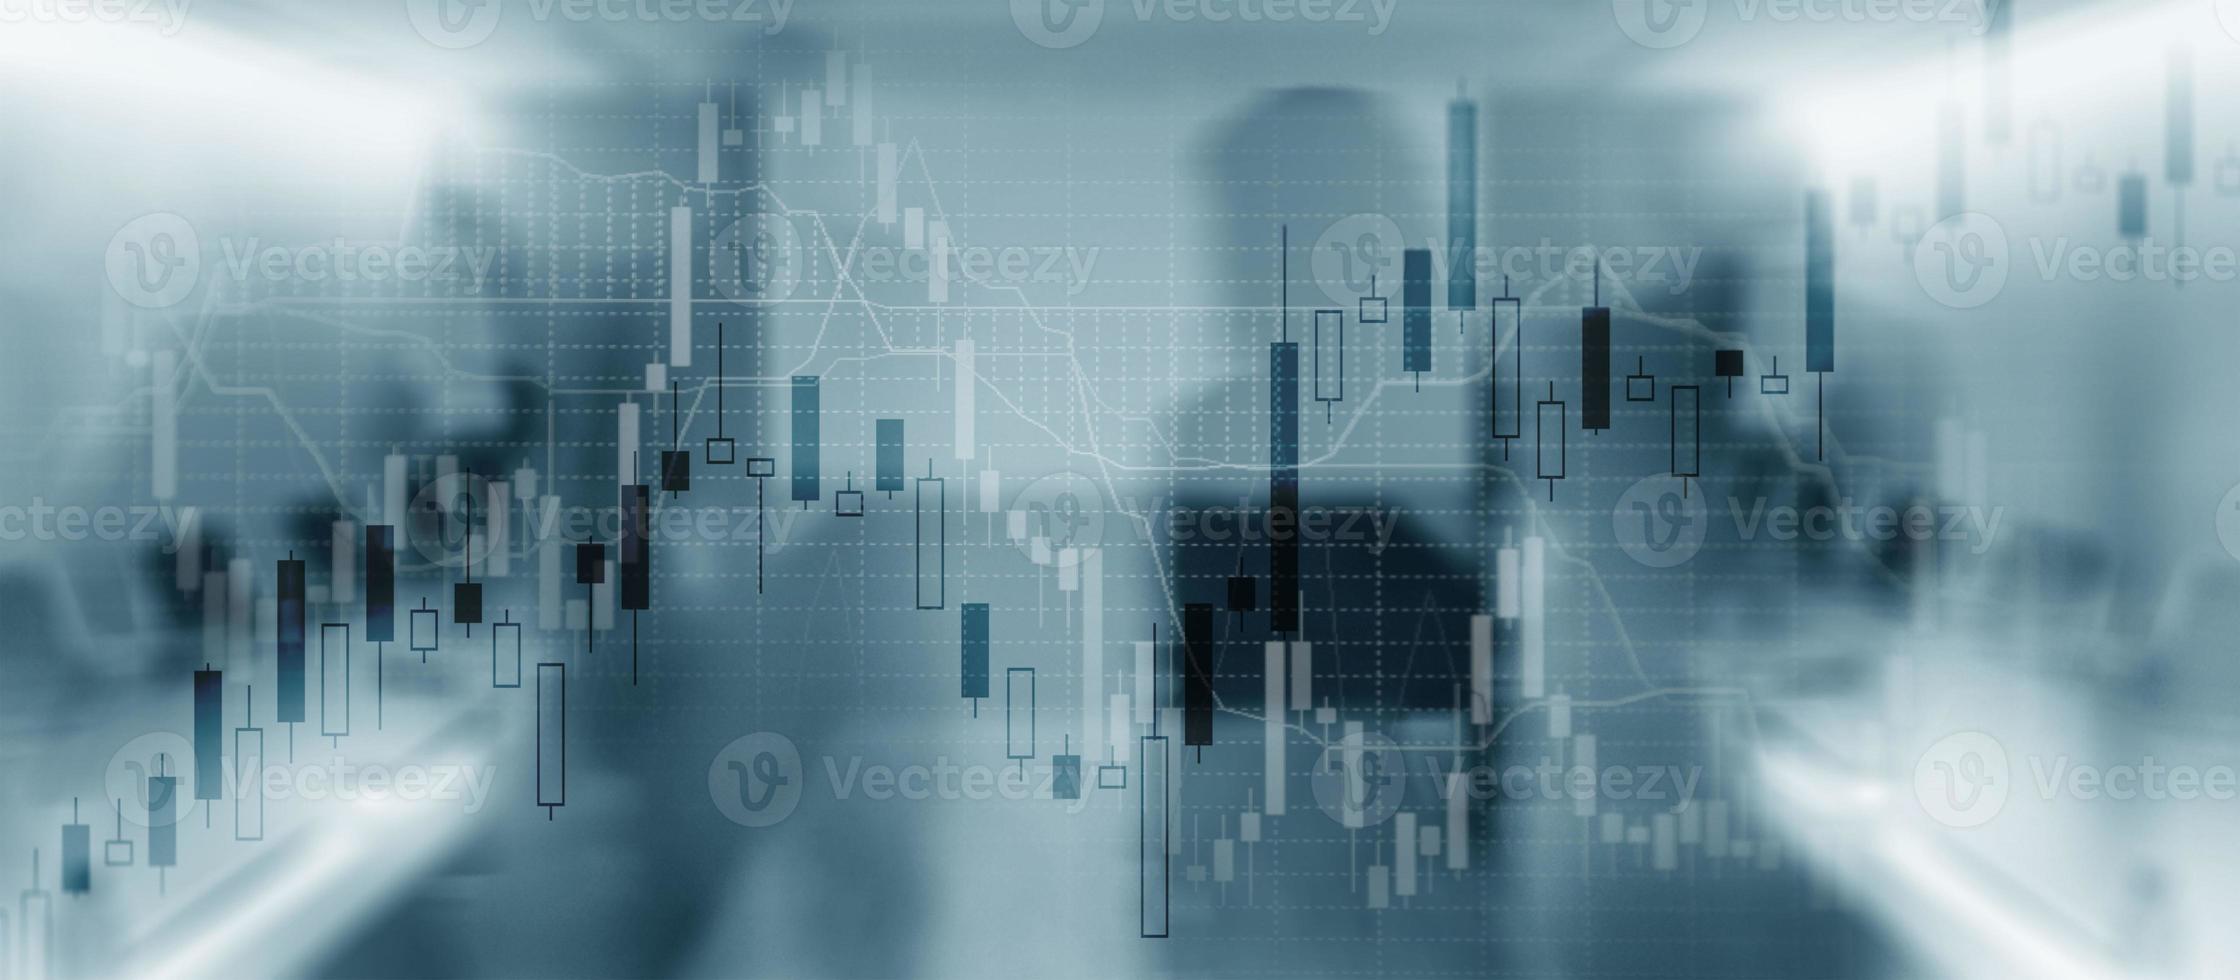 gráfico del mercado de valores. fondo abstracto para presentación foto